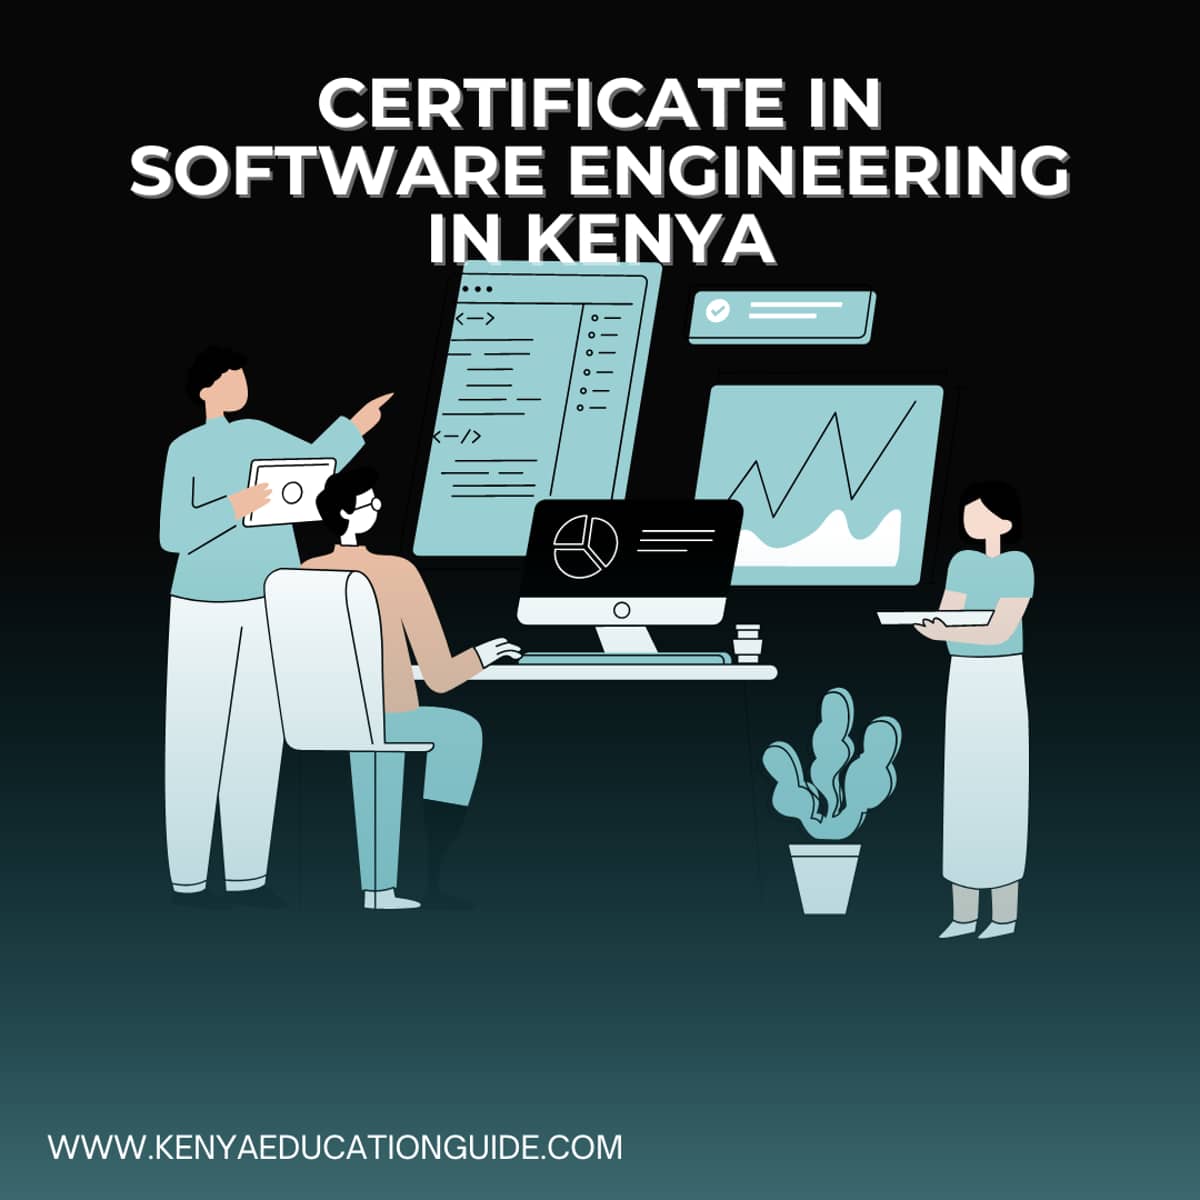 Certificate in Software Engineering in Kenya